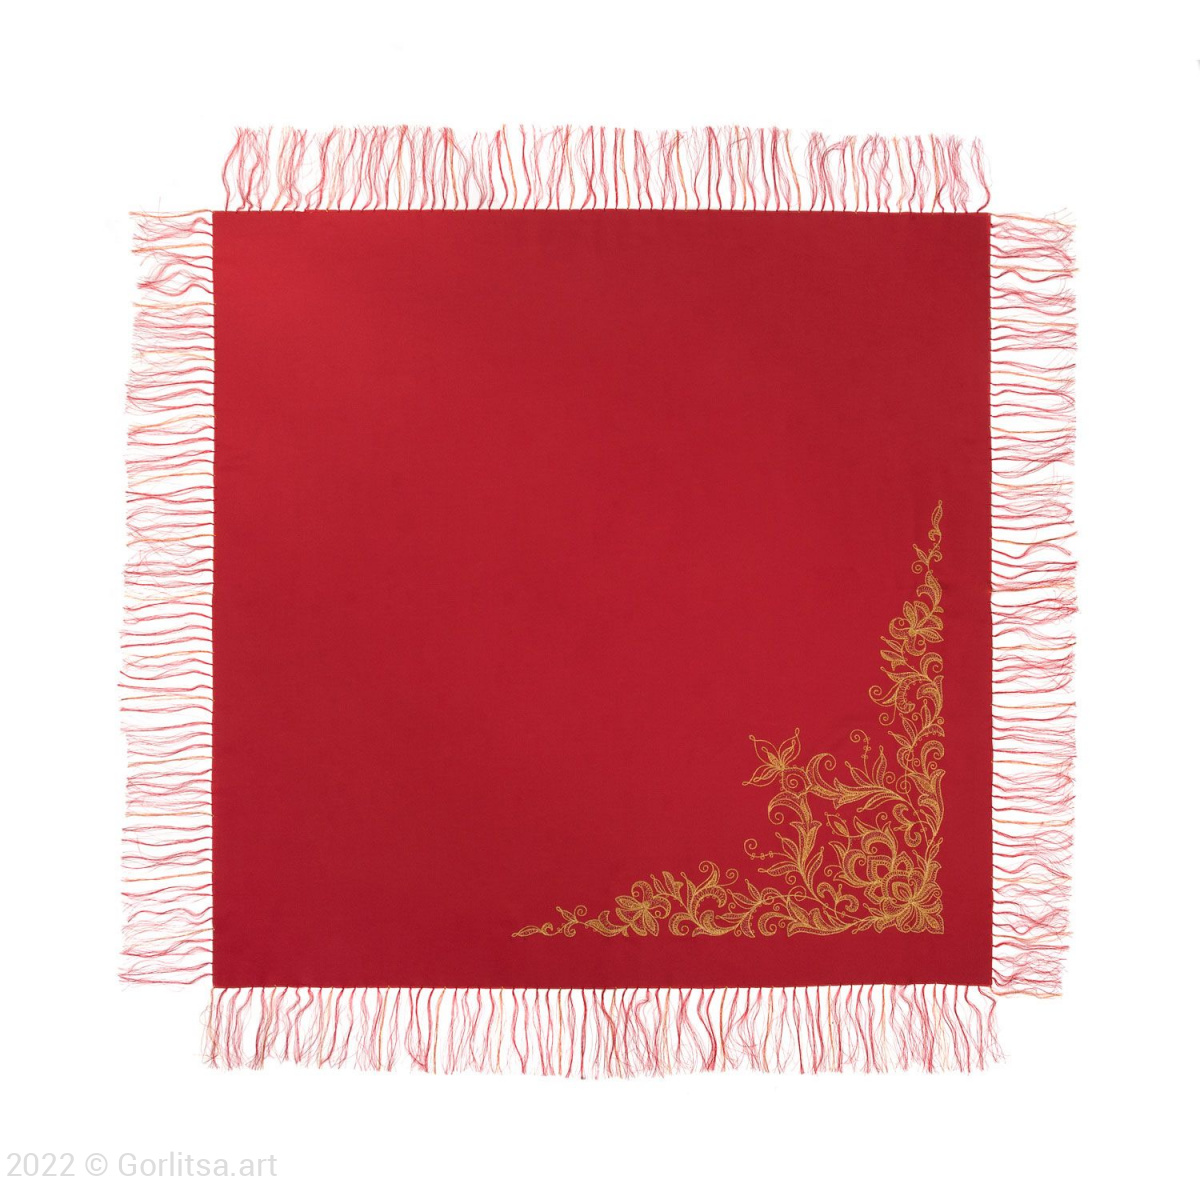 Платок «Орхидея», р.1058, цвет: красный, /золото/, шерсть шерсть Торжокские золотошвеи фото 3